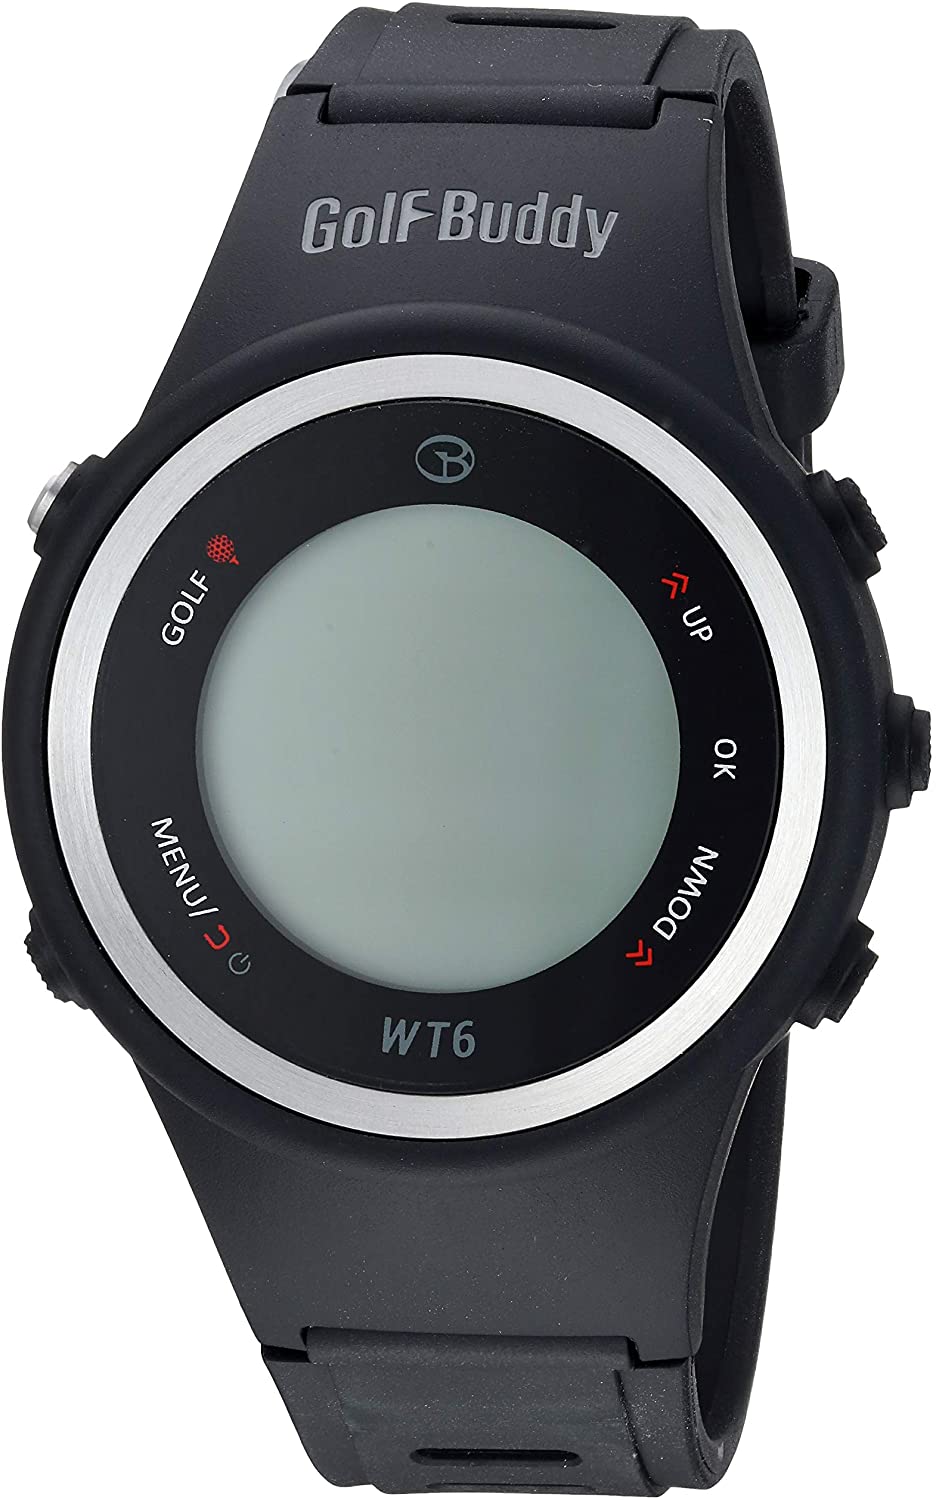 Mens Golf Buddy WT6 Golf GPS Watch